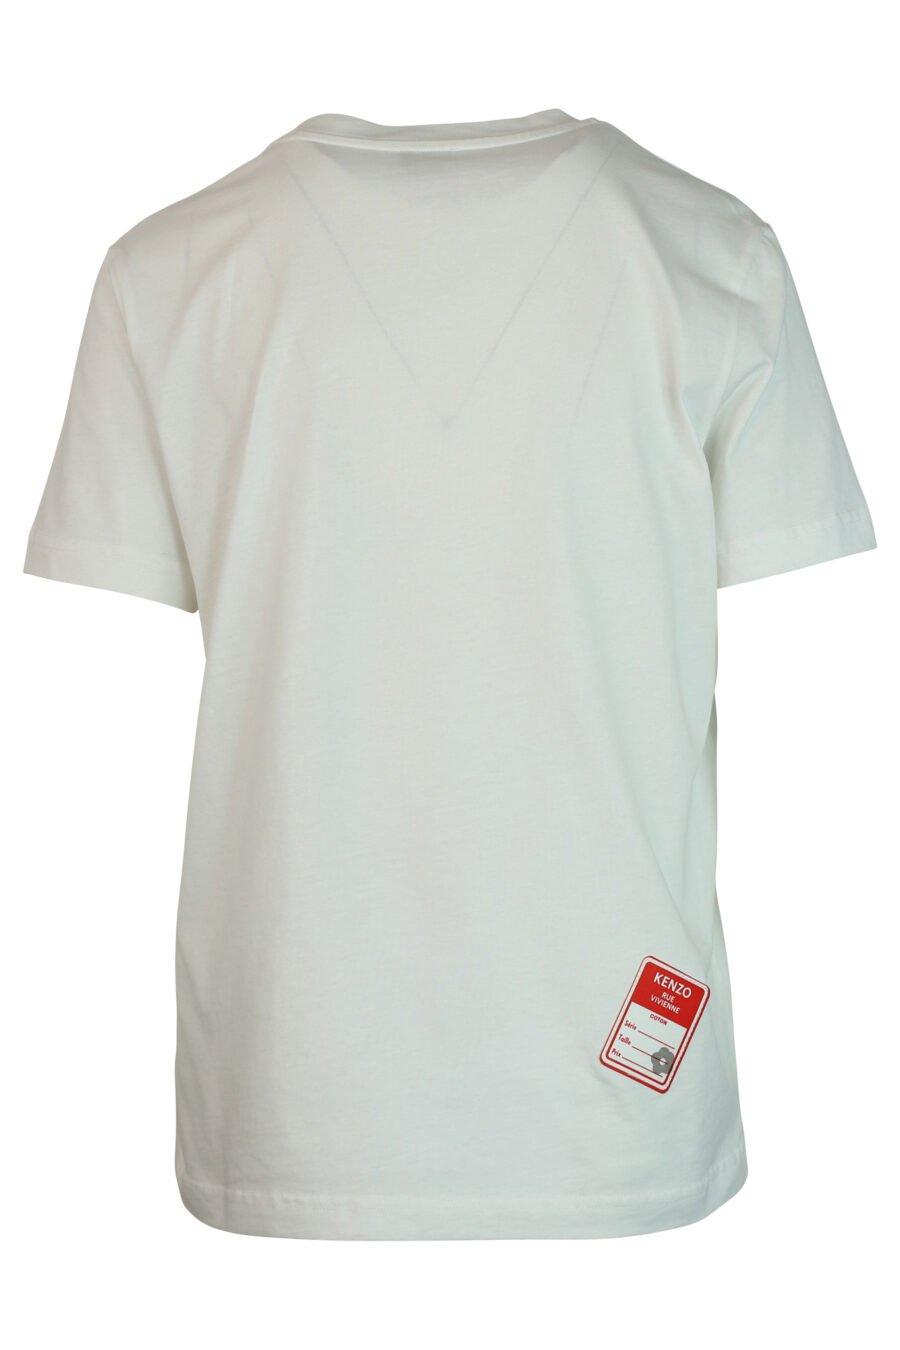 T-shirt branca com maxilogo preto "rue vivenne" - 3612230461161 2